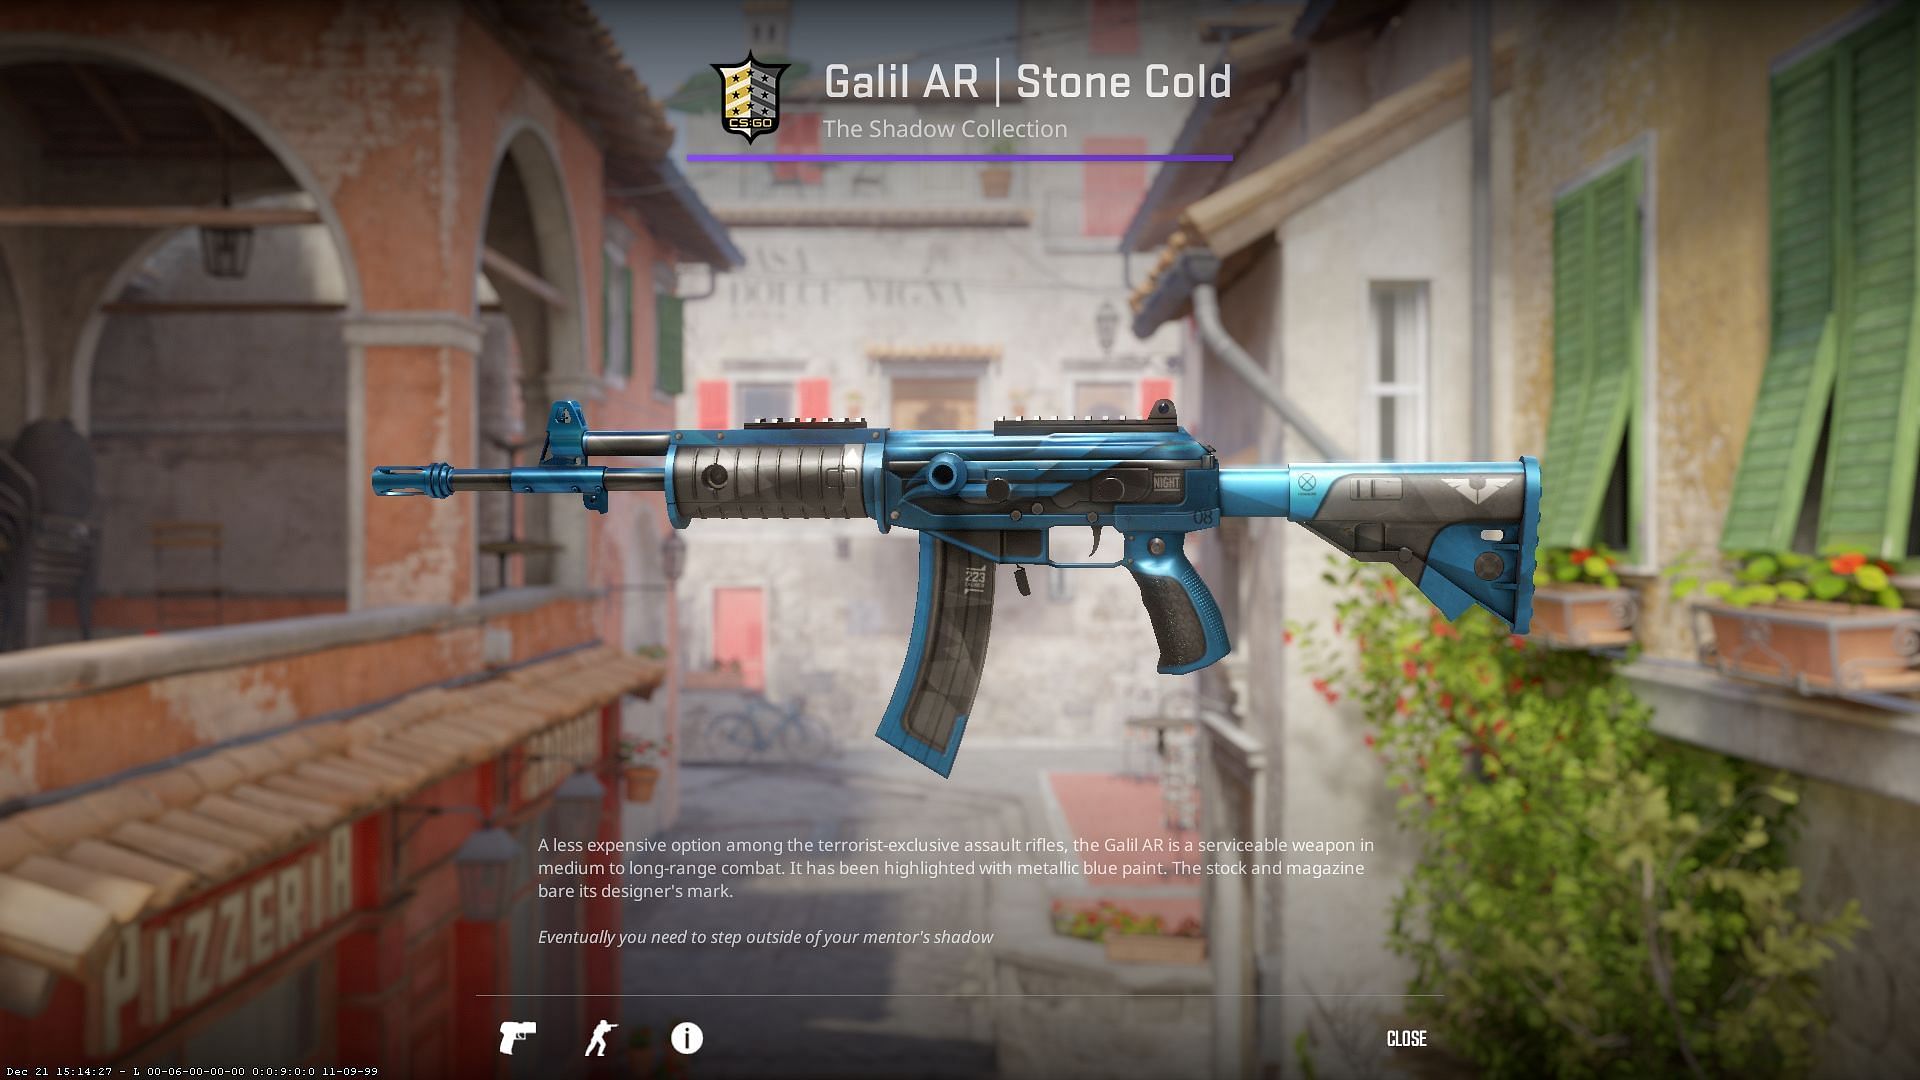 Galil AR Stone Cold(Image via Valve)